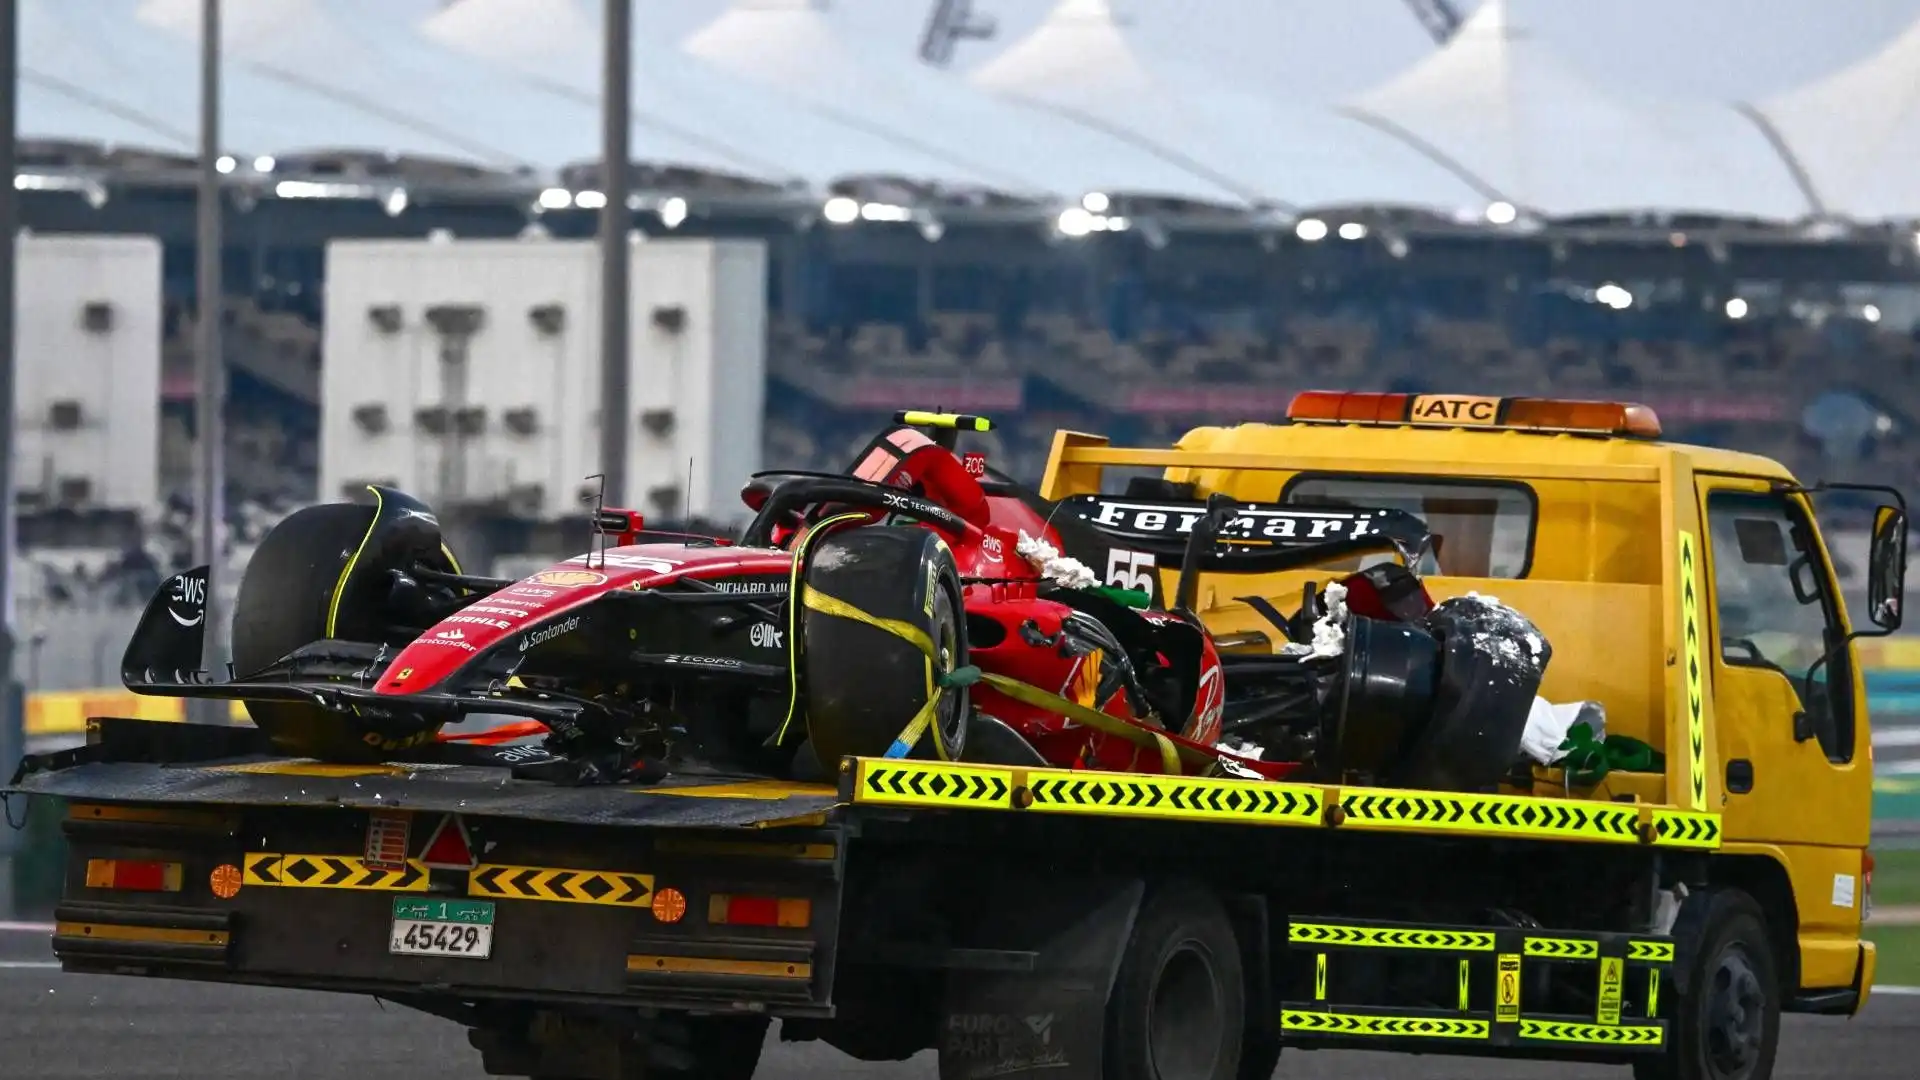 Insomma, l'ultimo GP stagionale non è cominciato nel migliore dei modi per Carlos Sainz e la Ferrari